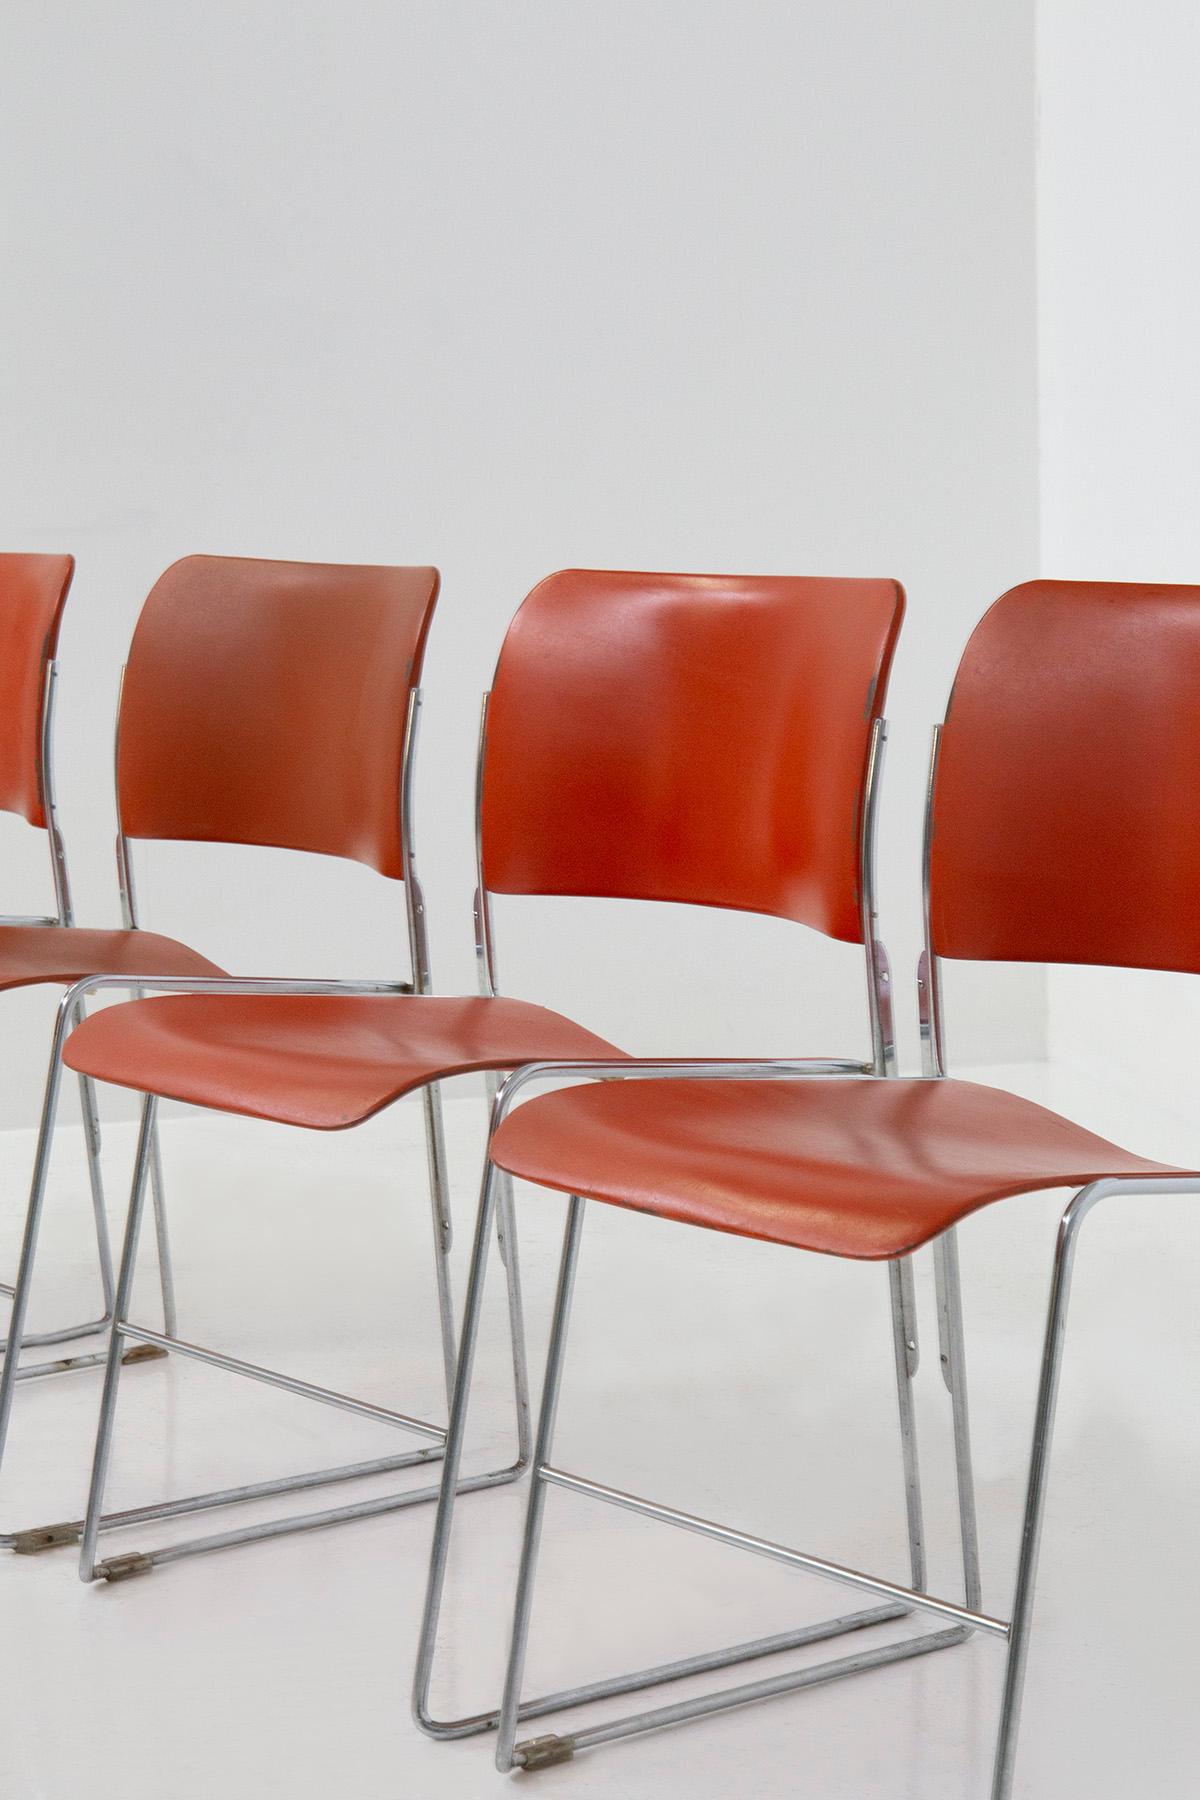 Betreten Sie mit den kultigen Stühlen des Modells 40/4 ein Reich der Verzauberung und Anmut. Diese vom Visionär David Rowland geschaffenen Meisterwerke verkörpern die Kunstfertigkeit von Träumen und die Funktionalität von Wünschen. Gleiten Sie in